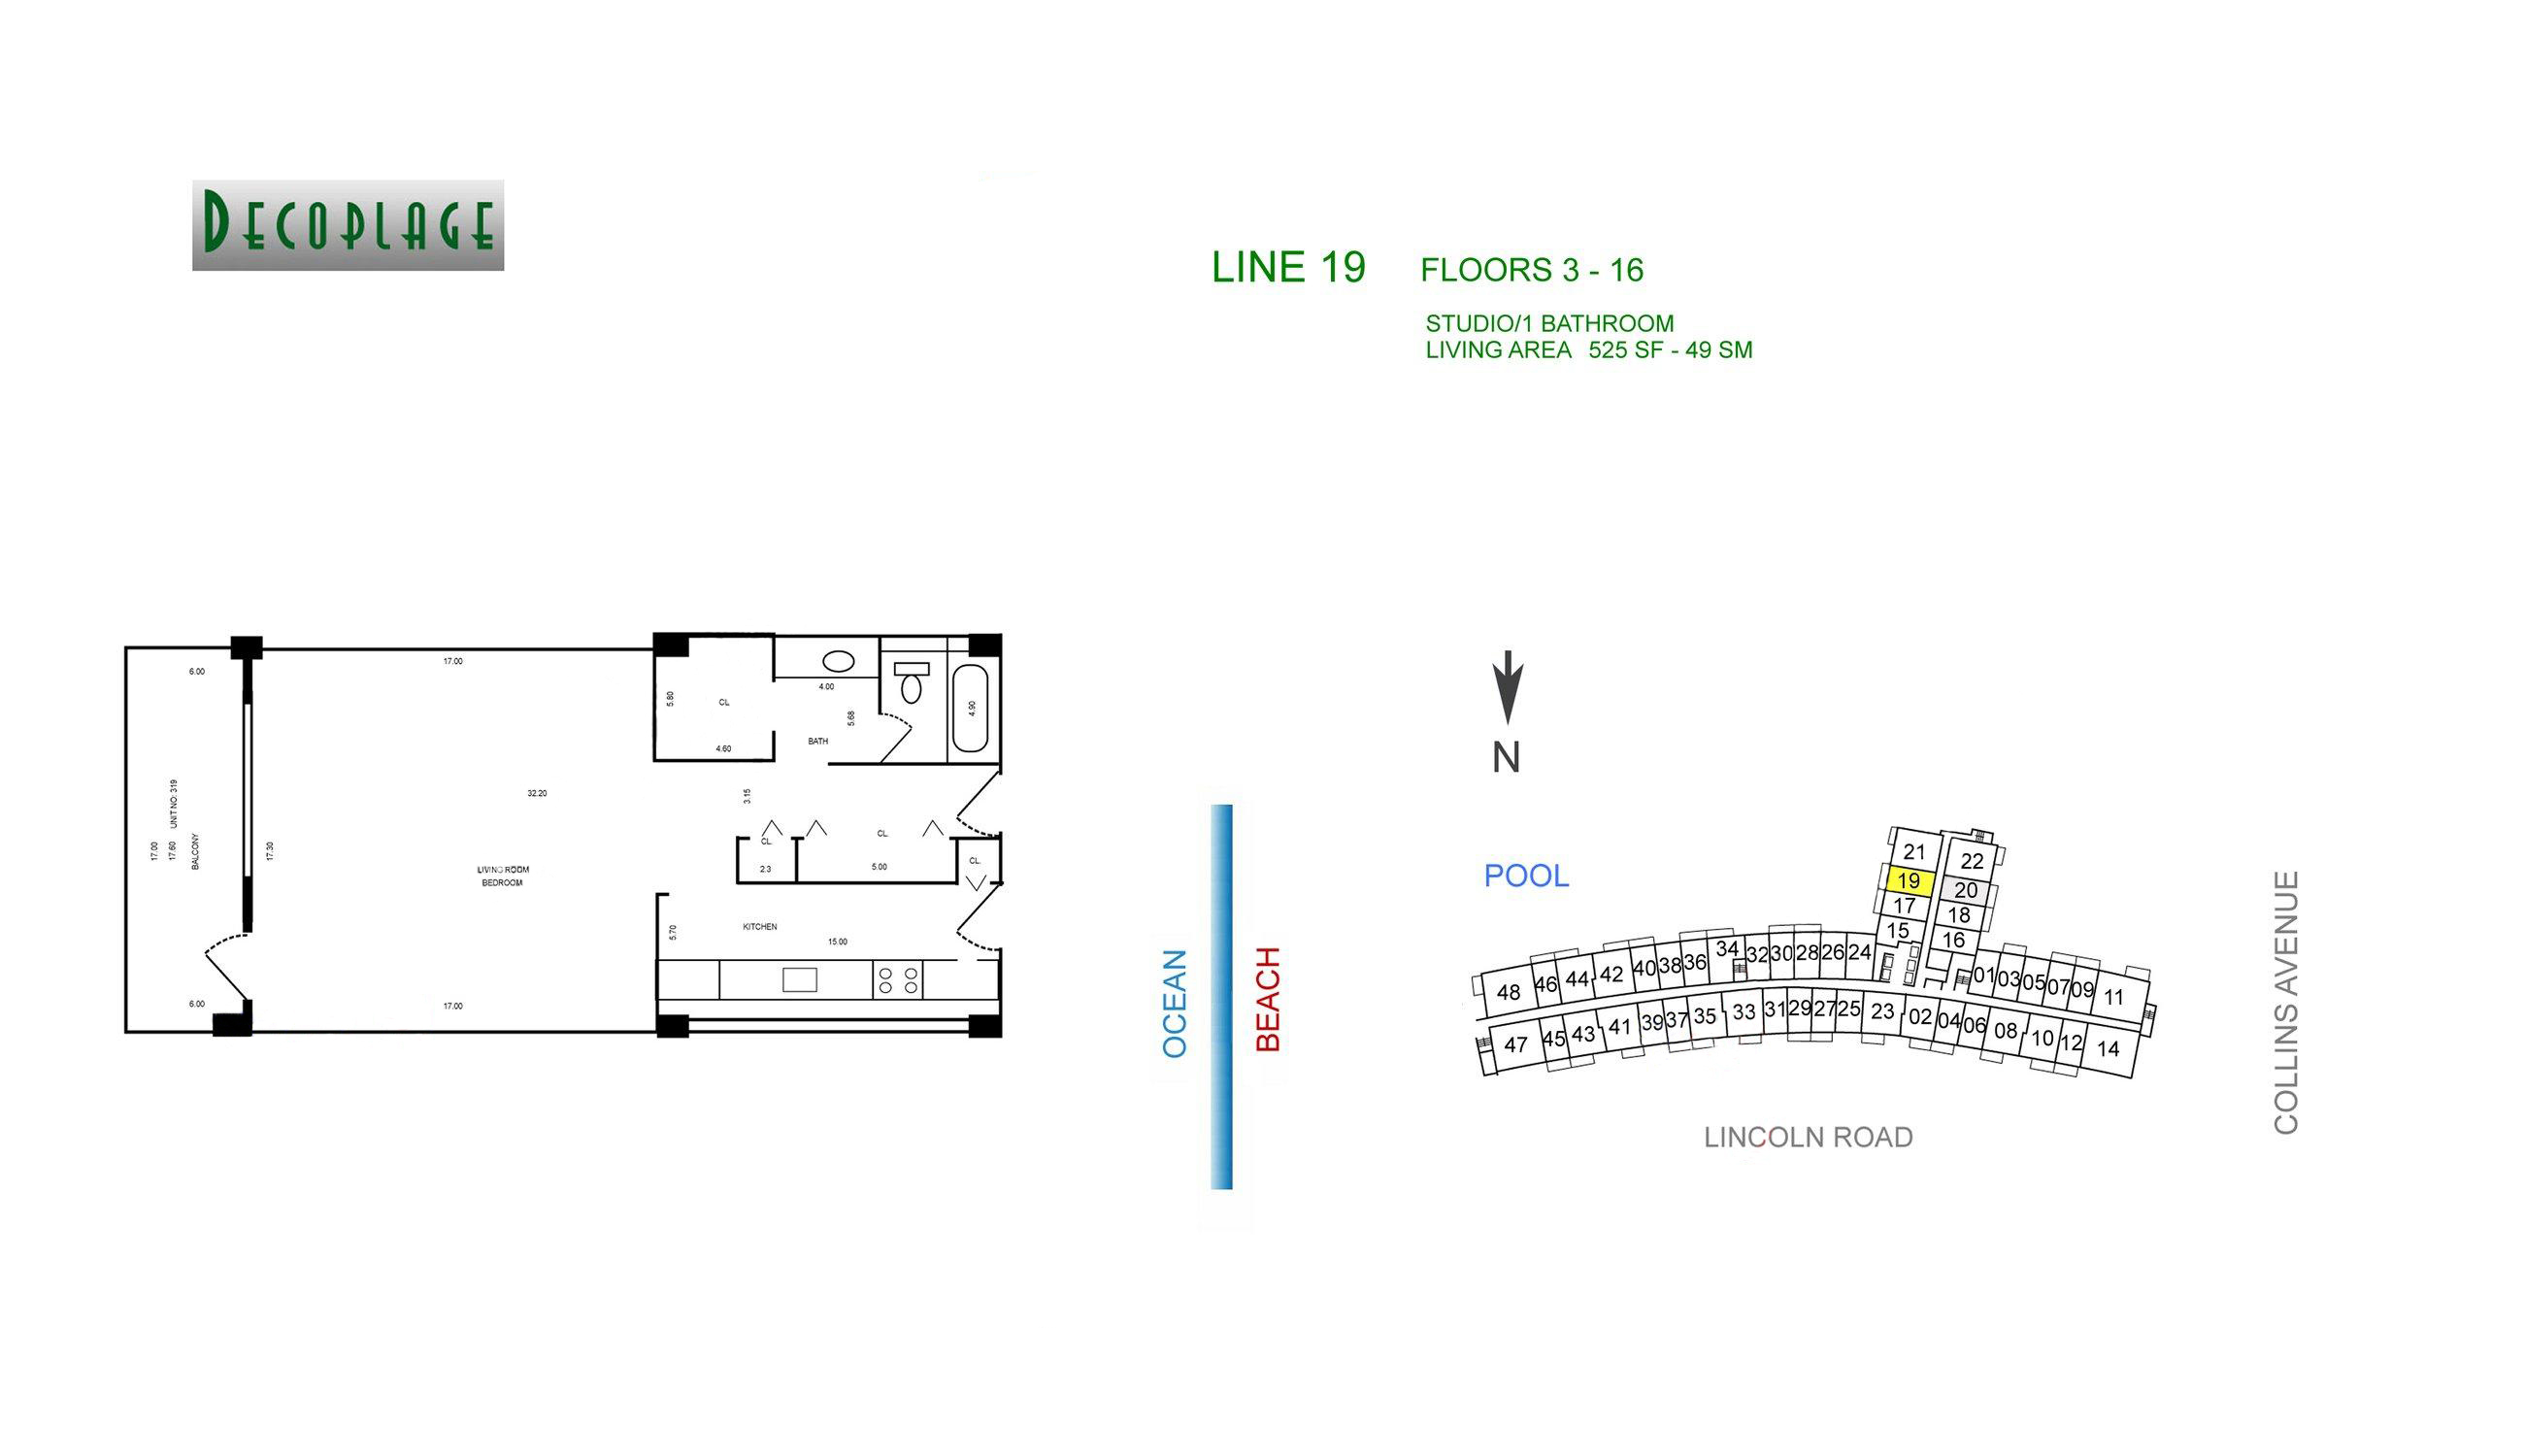 Decoplage Lines 19 Floors 3-16